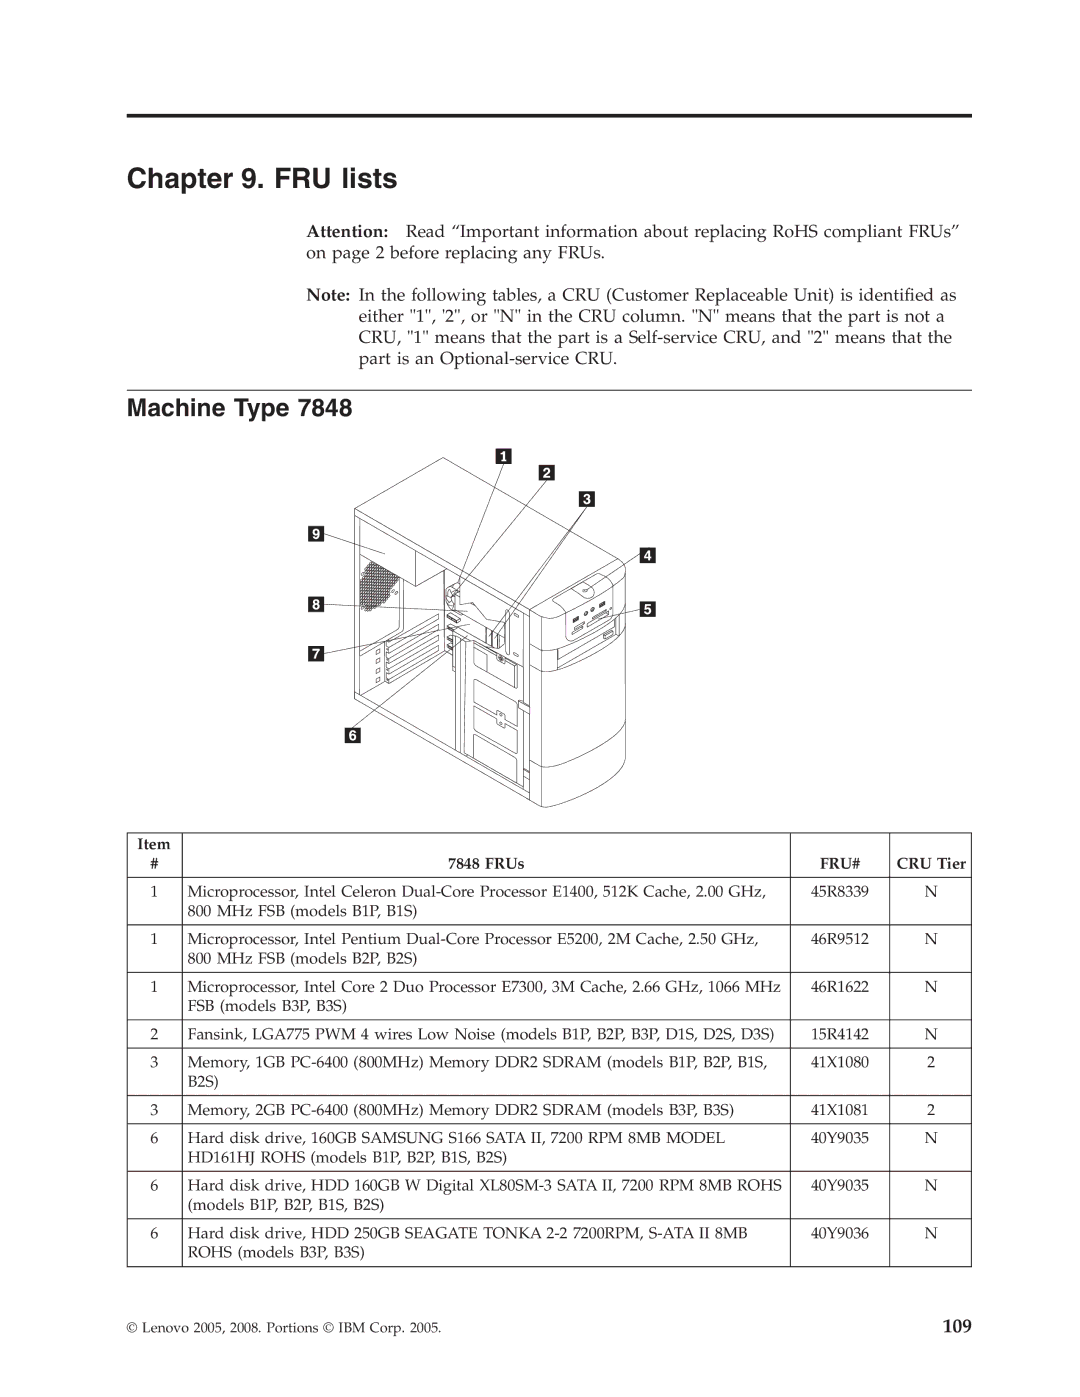 Lenovo E200 manual FRU lists, Machine Type, FRUs, CRU Tier 